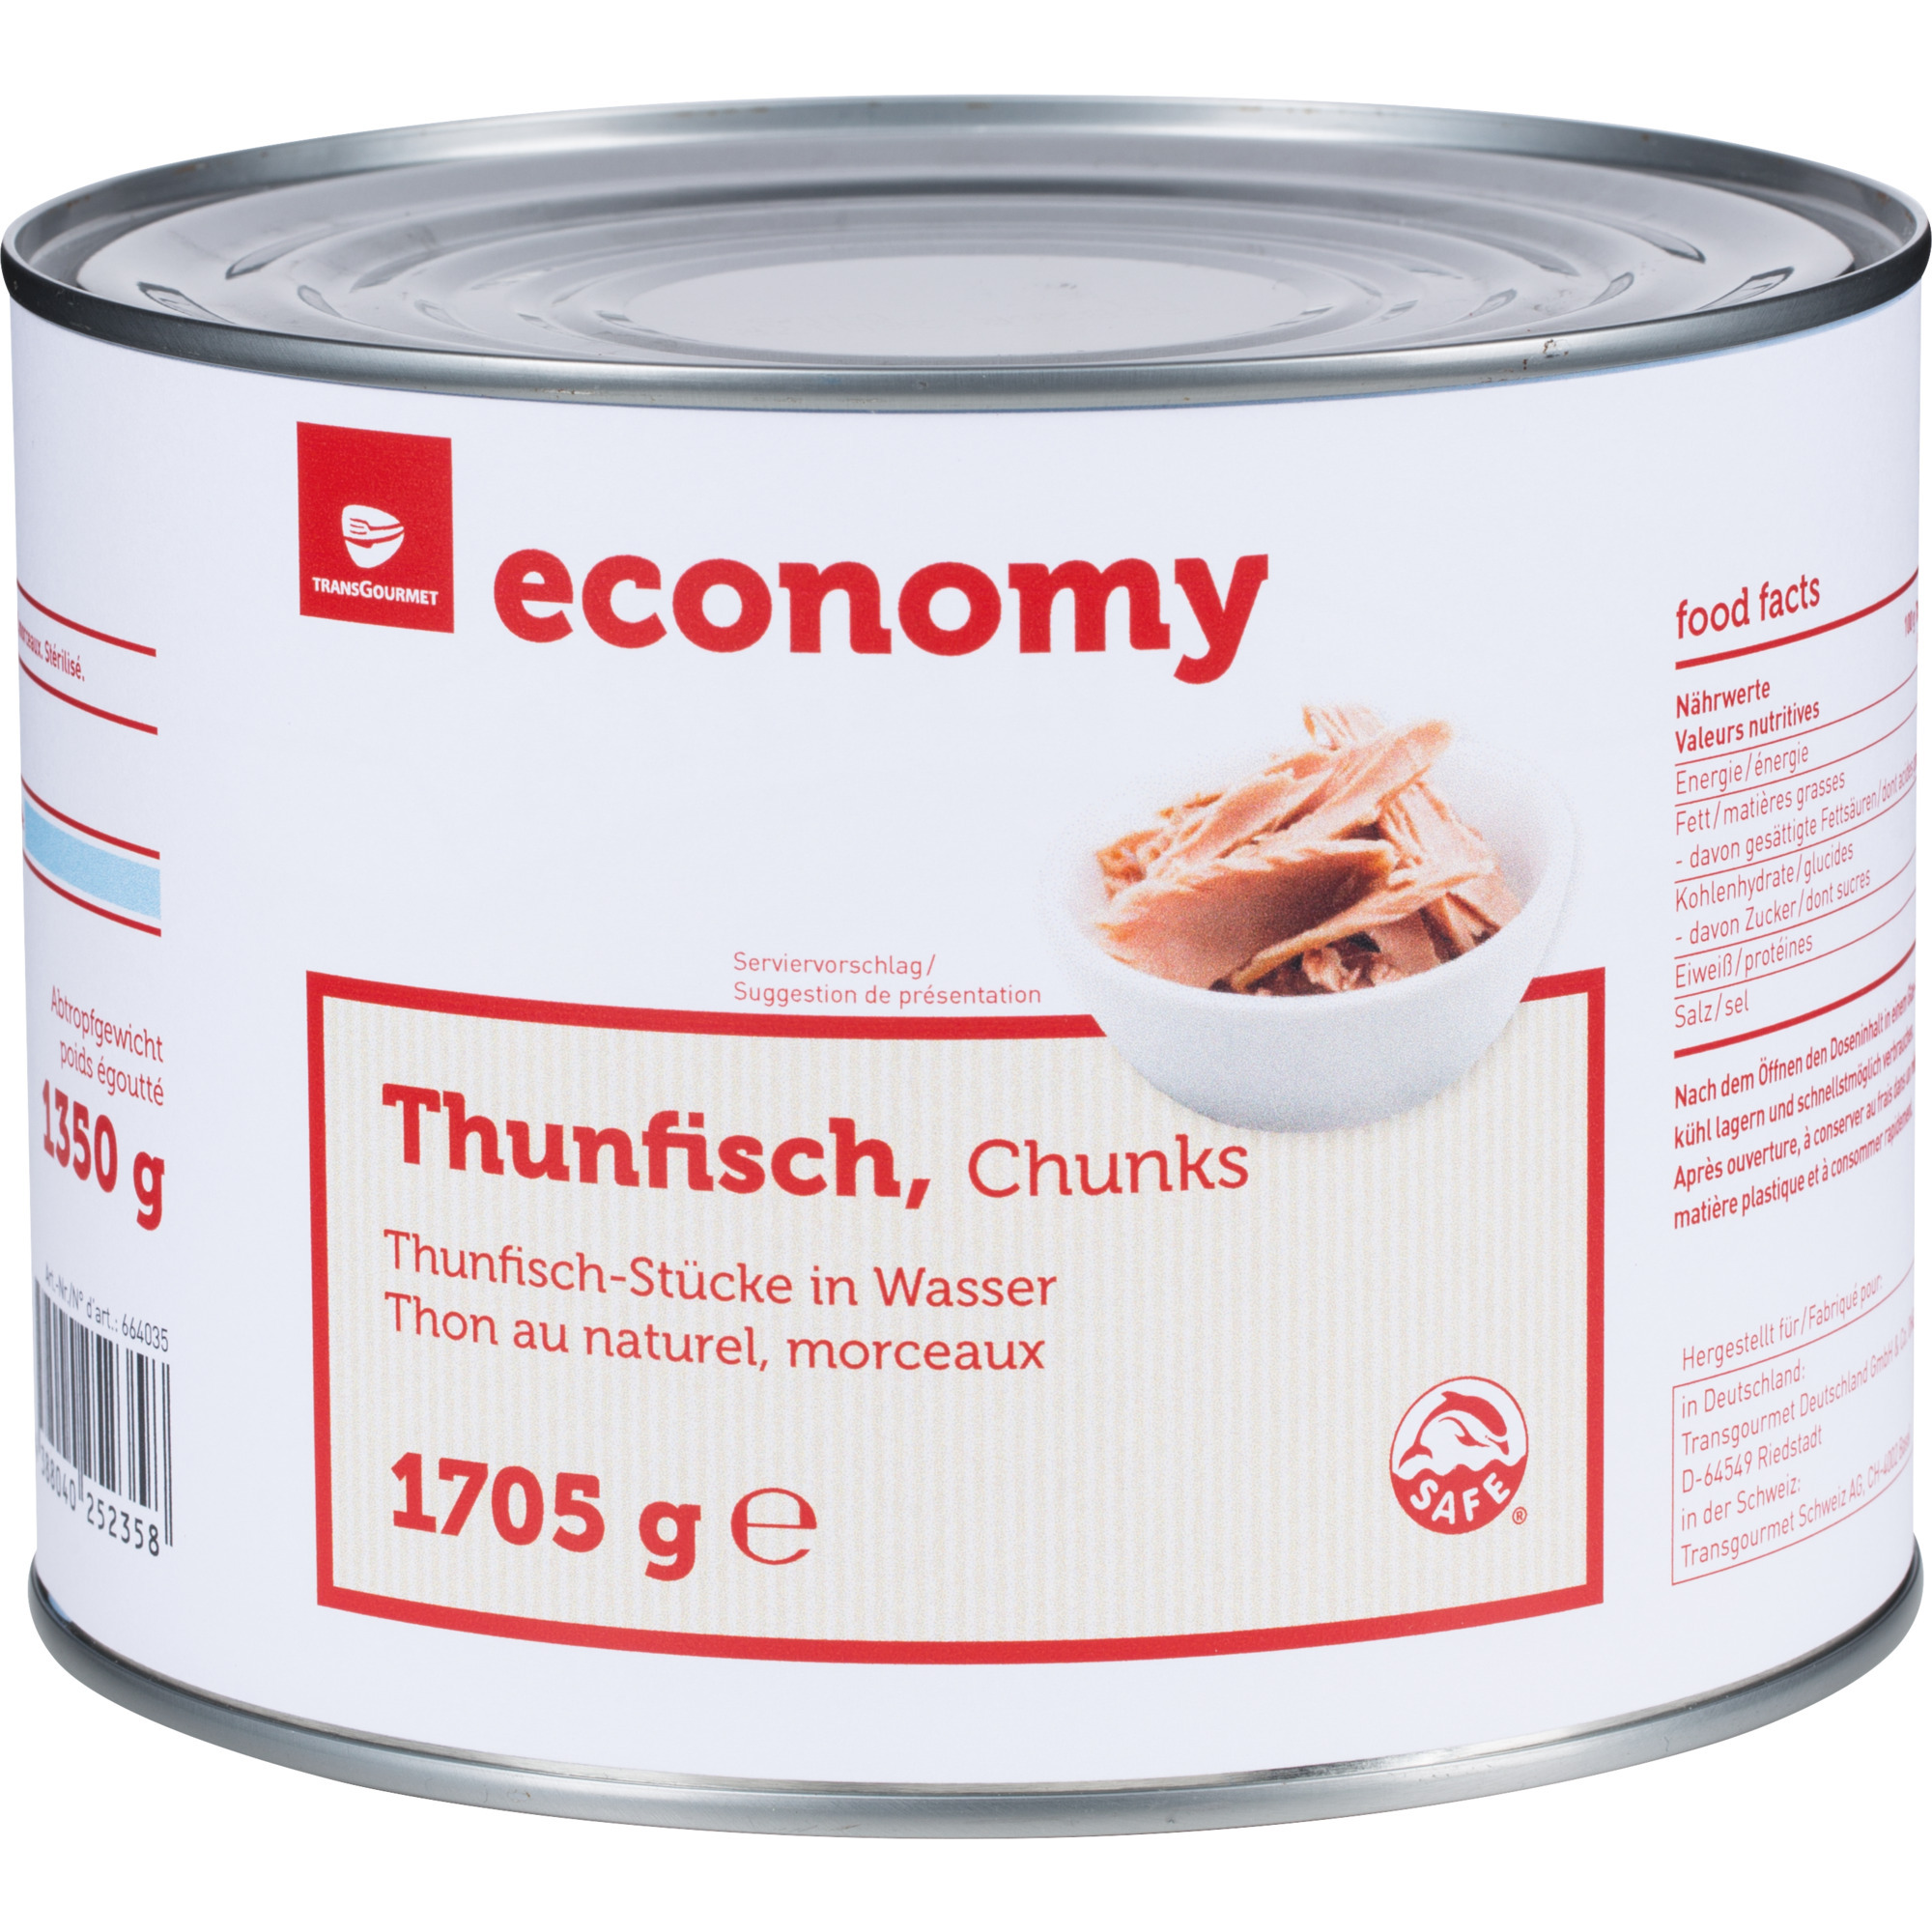 Economy Thunfischstücke in Wasser 1705g